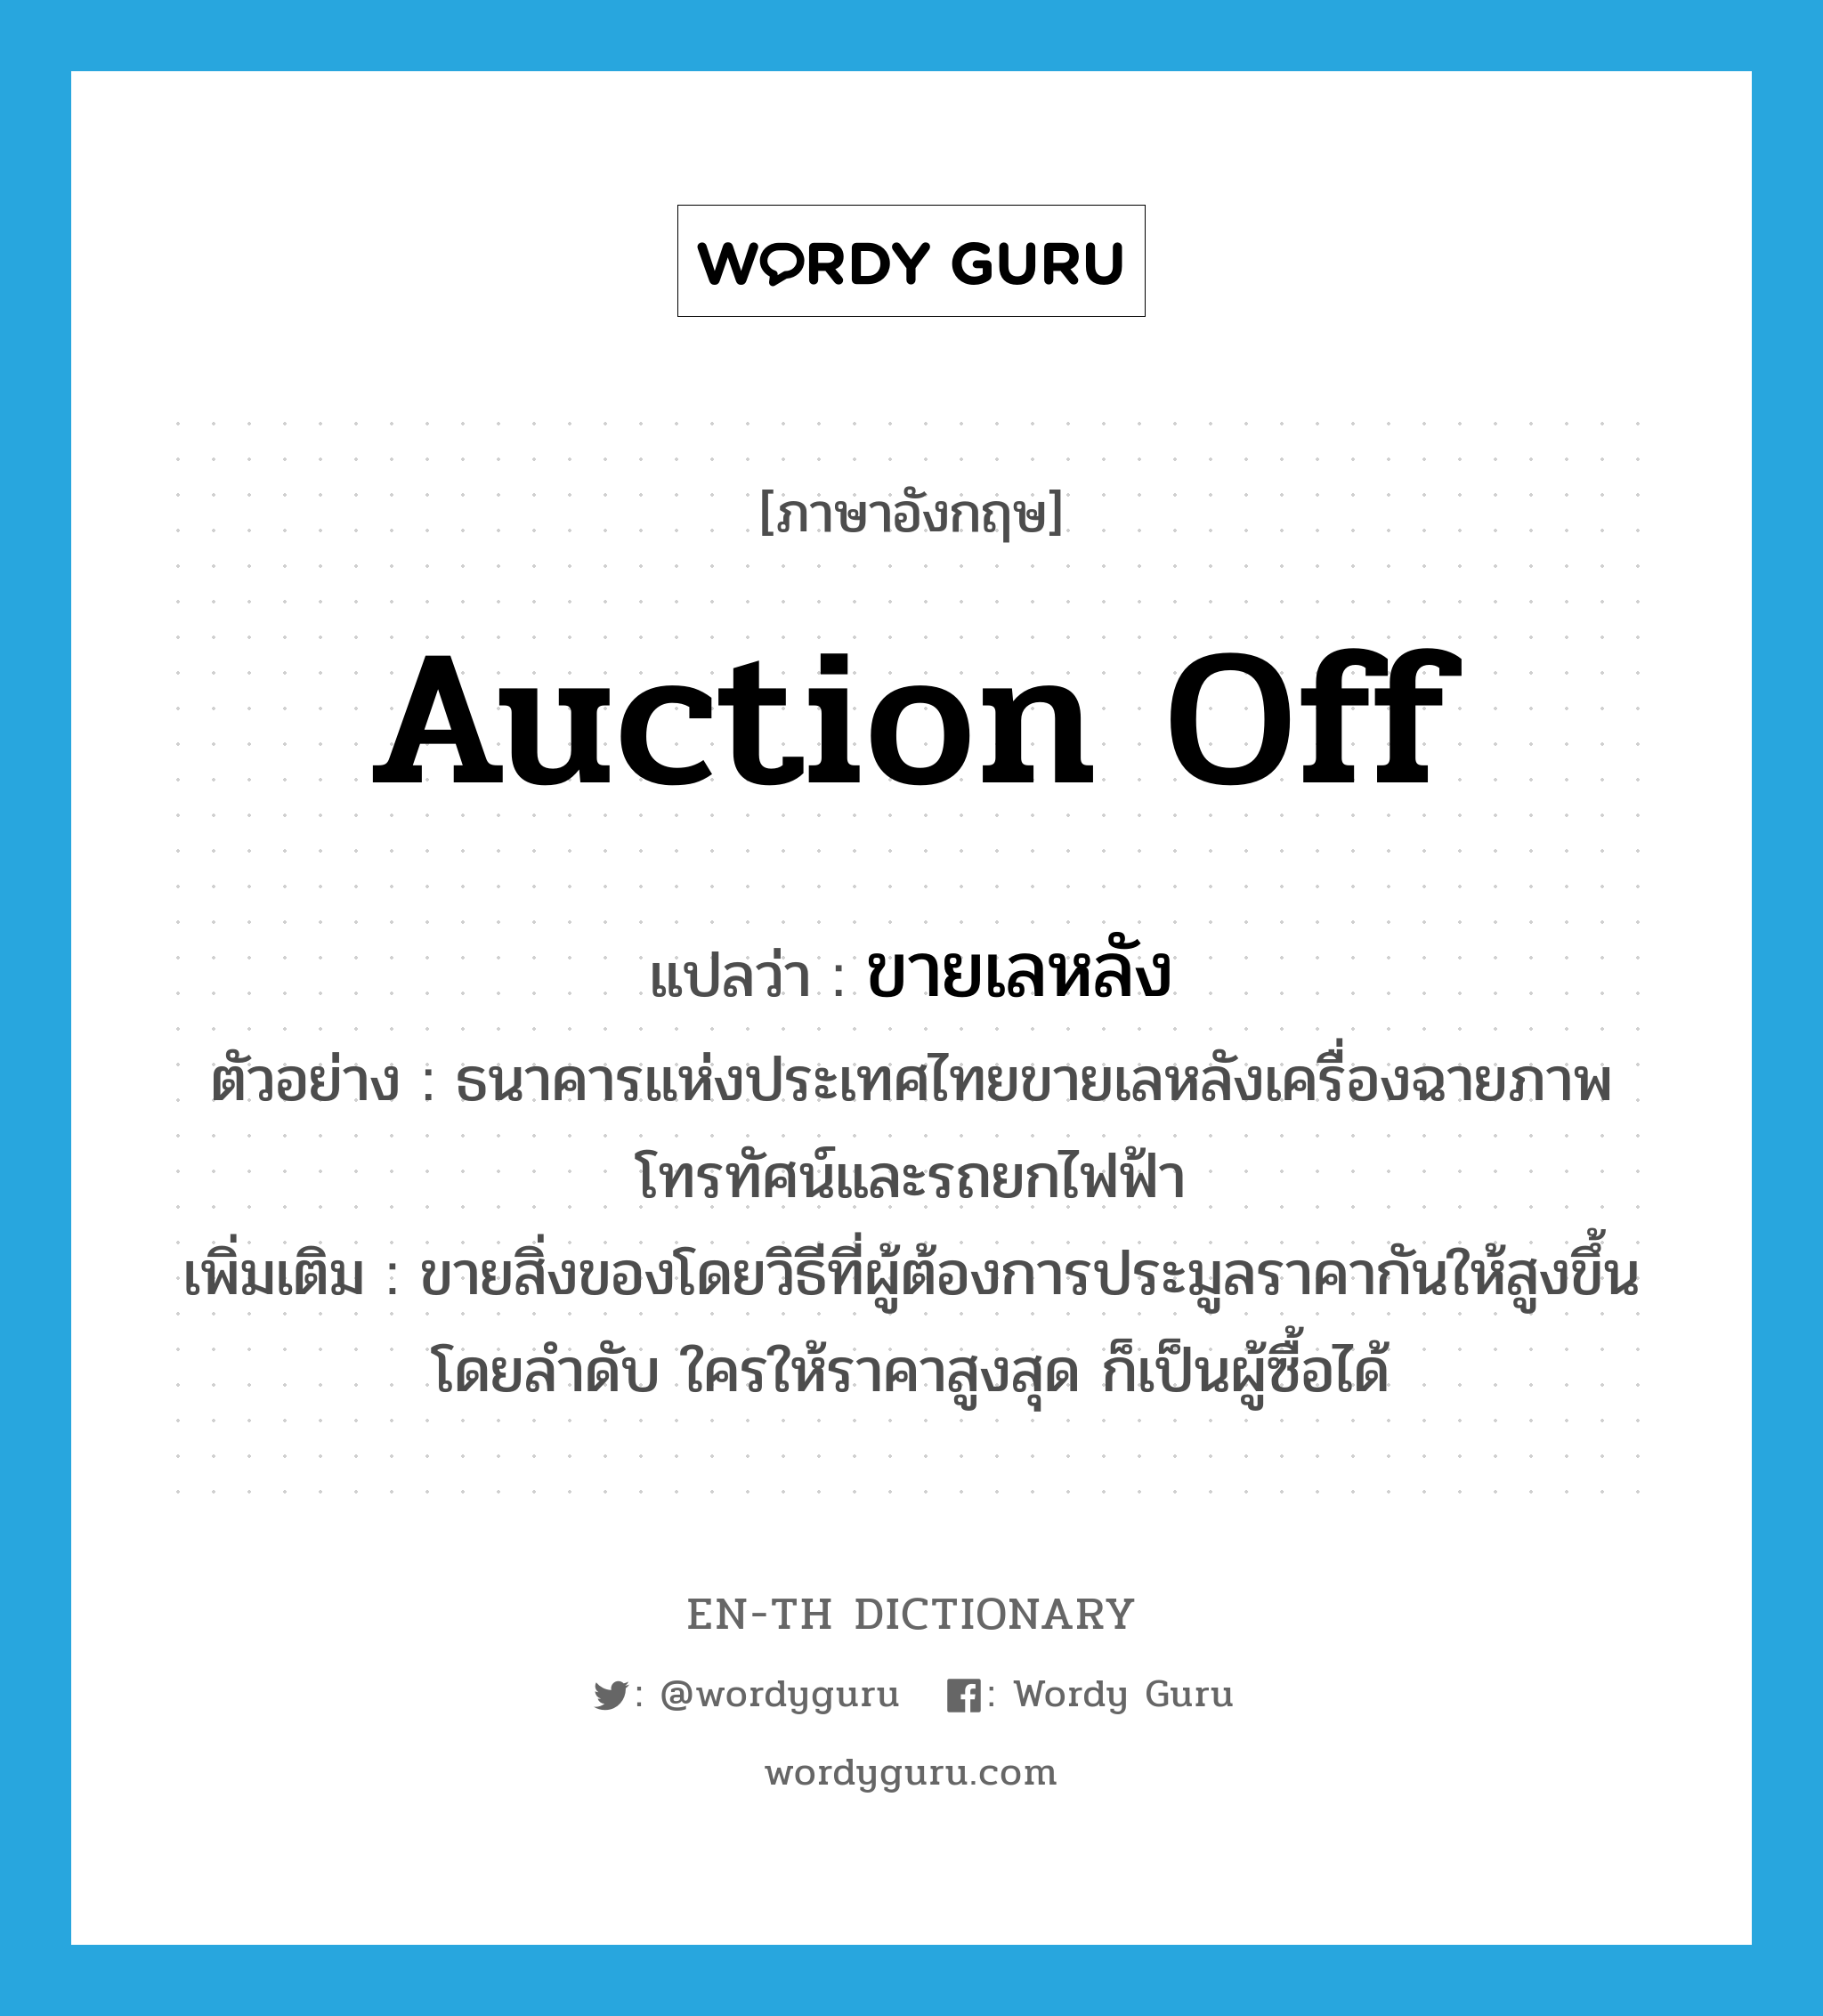 auction off แปลว่า?, คำศัพท์ภาษาอังกฤษ auction off แปลว่า ขายเลหลัง ประเภท V ตัวอย่าง ธนาคารแห่งประเทศไทยขายเลหลังเครื่องฉายภาพโทรทัศน์และรถยกไฟฟ้า เพิ่มเติม ขายสิ่งของโดยวิธีที่ผู้ต้องการประมูลราคากันให้สูงขึ้นโดยลำดับ ใครให้ราคาสูงสุด ก็เป็นผู้ซื้อได้ หมวด V